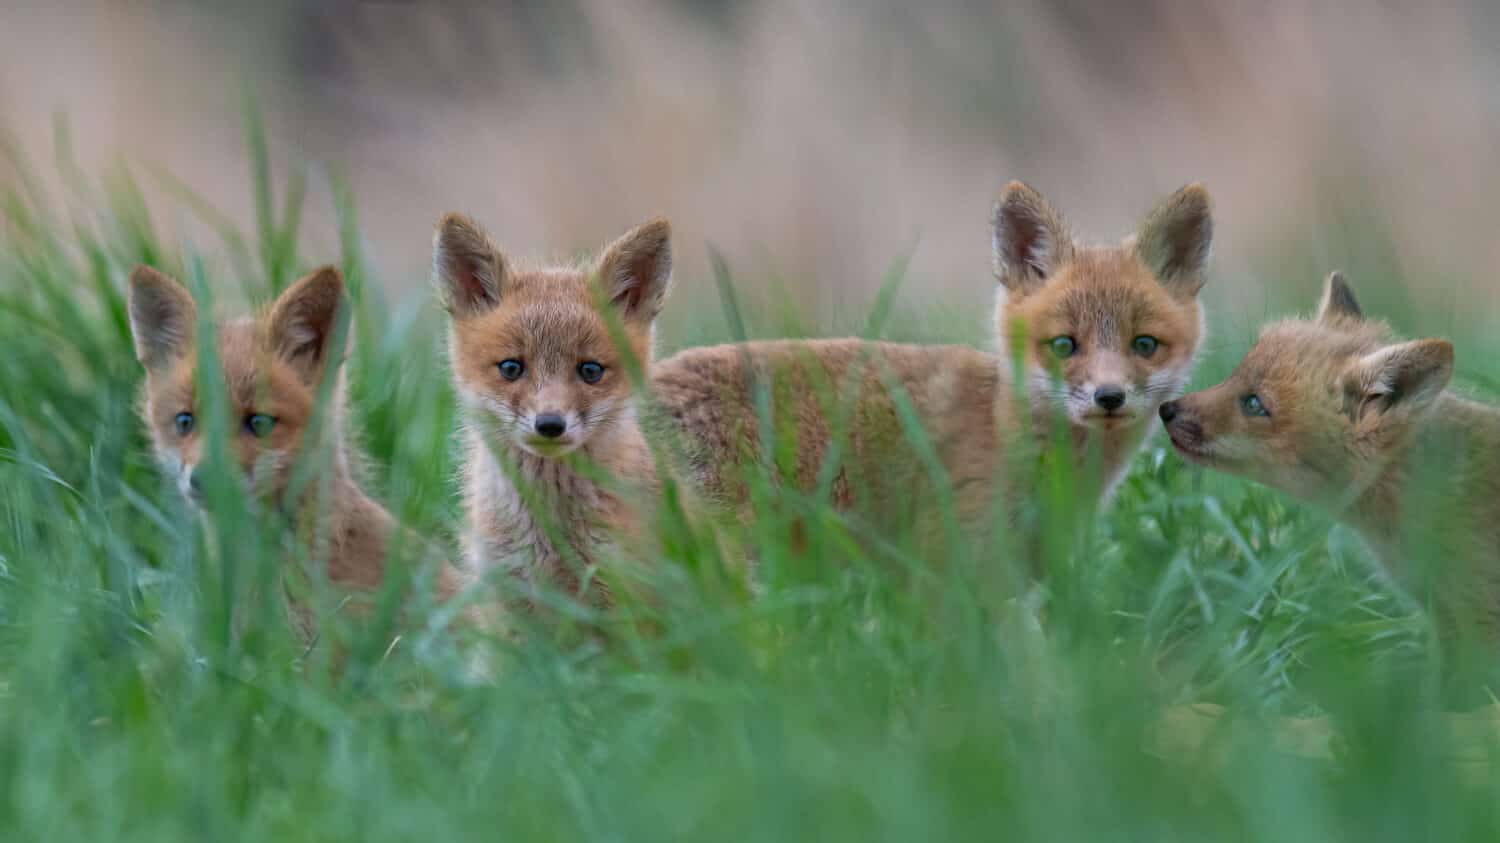 Quattro curiosi cuccioli di volpe rossa che spuntano dall'erba.